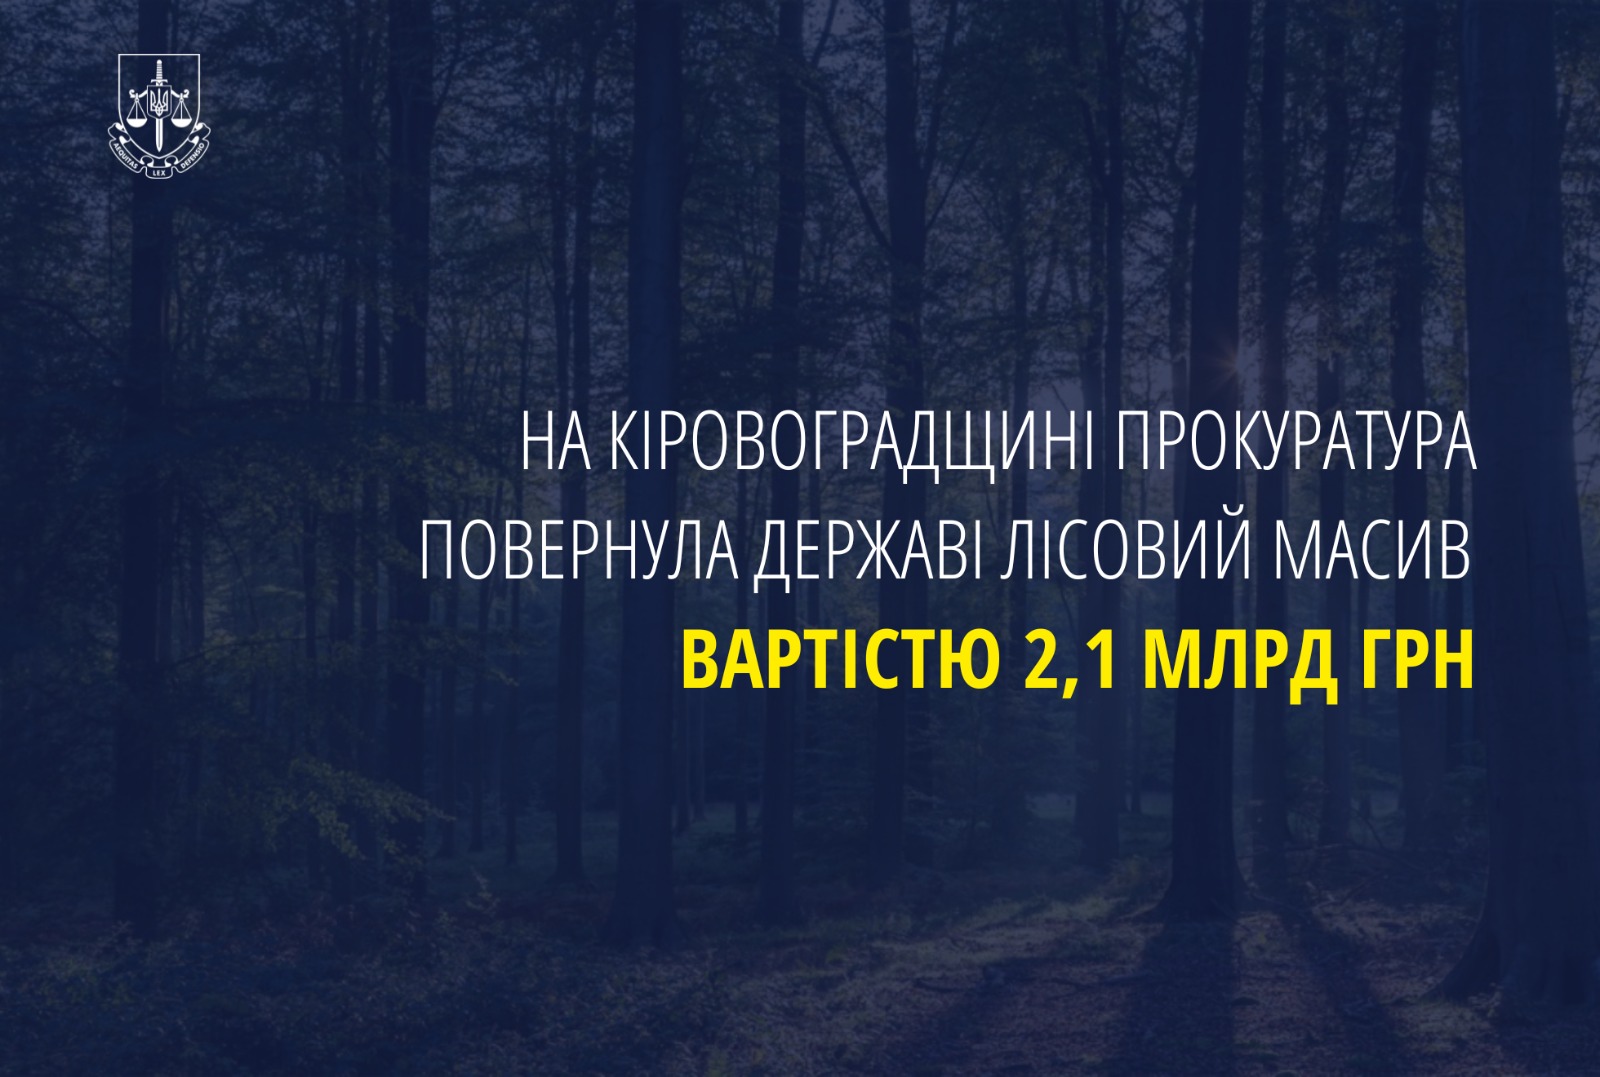 На Кіровоградщині прокуратура повернула державі лісовий масив вартістю 2,1 млрд грн